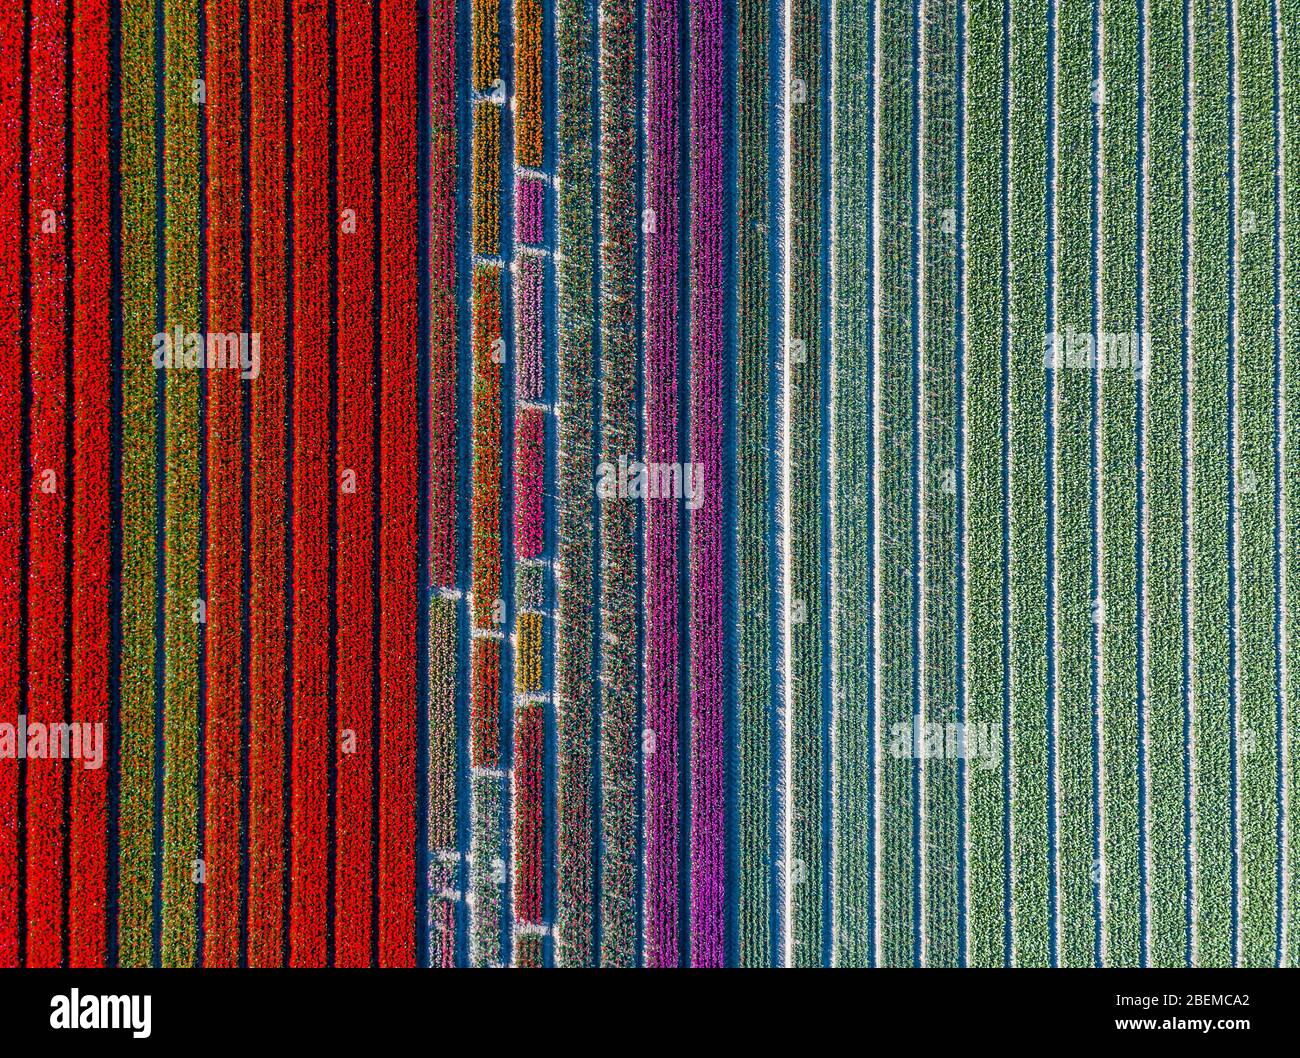 Vista aerea di strisce colorate e campo di tulipani nel comune Noordoostpolder, Flevoland Foto Stock